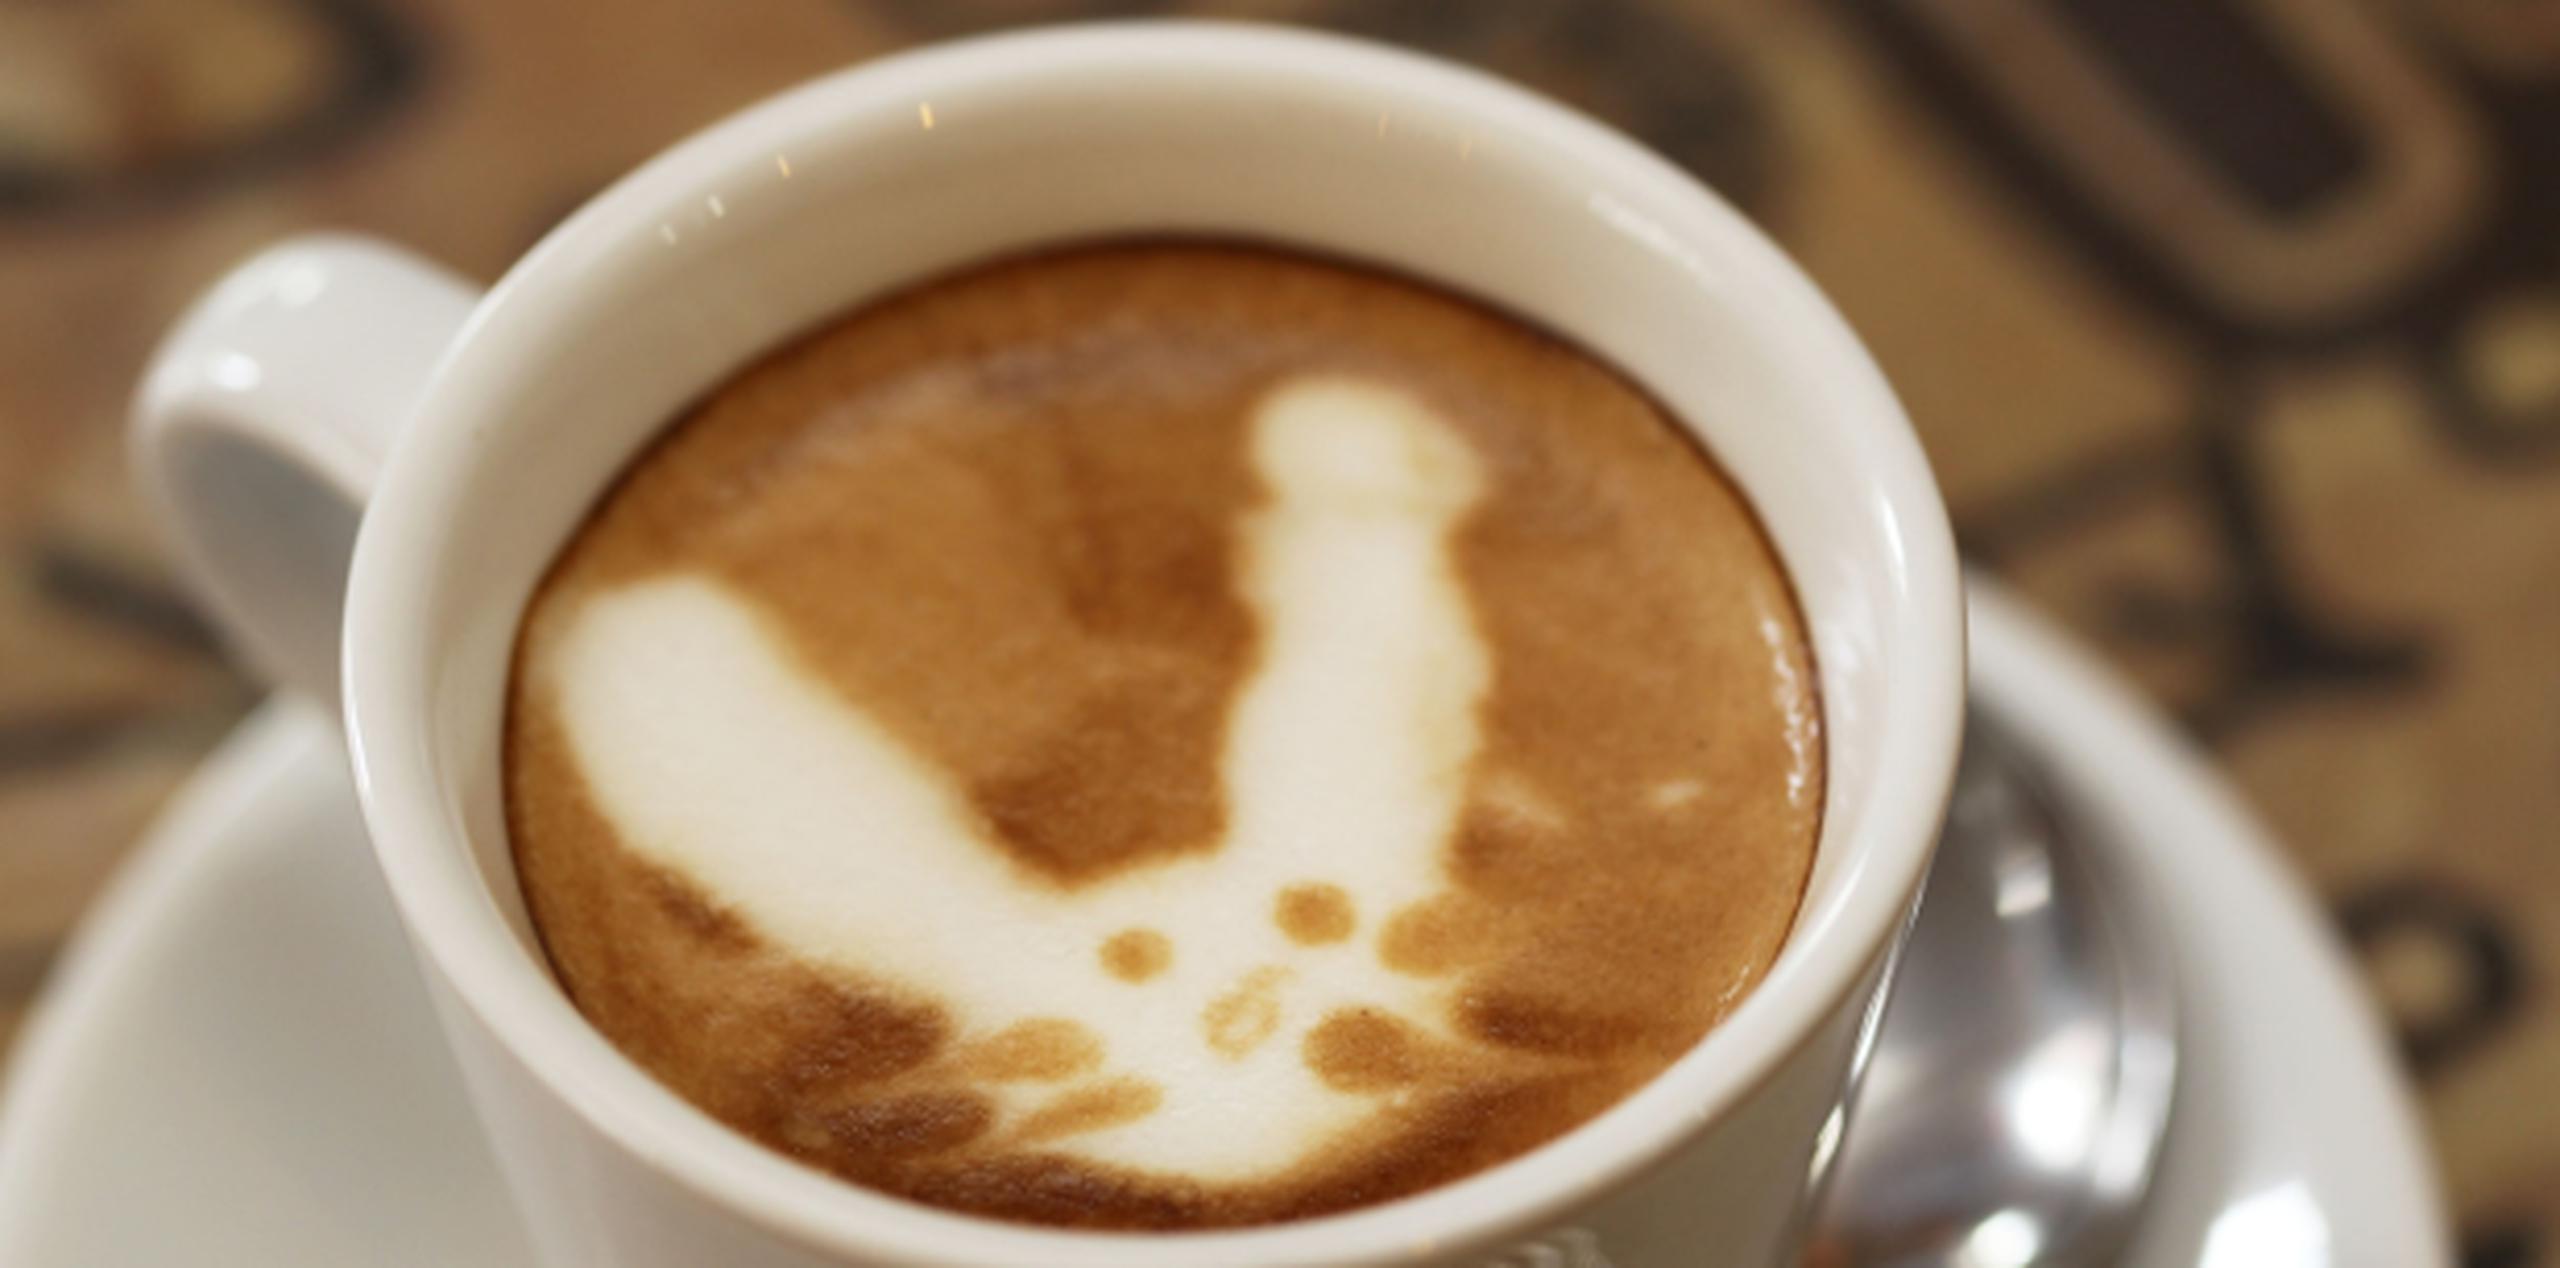 El café en Abracadabra puede sorprenderte con la imagen de un conejo. (Archivo)